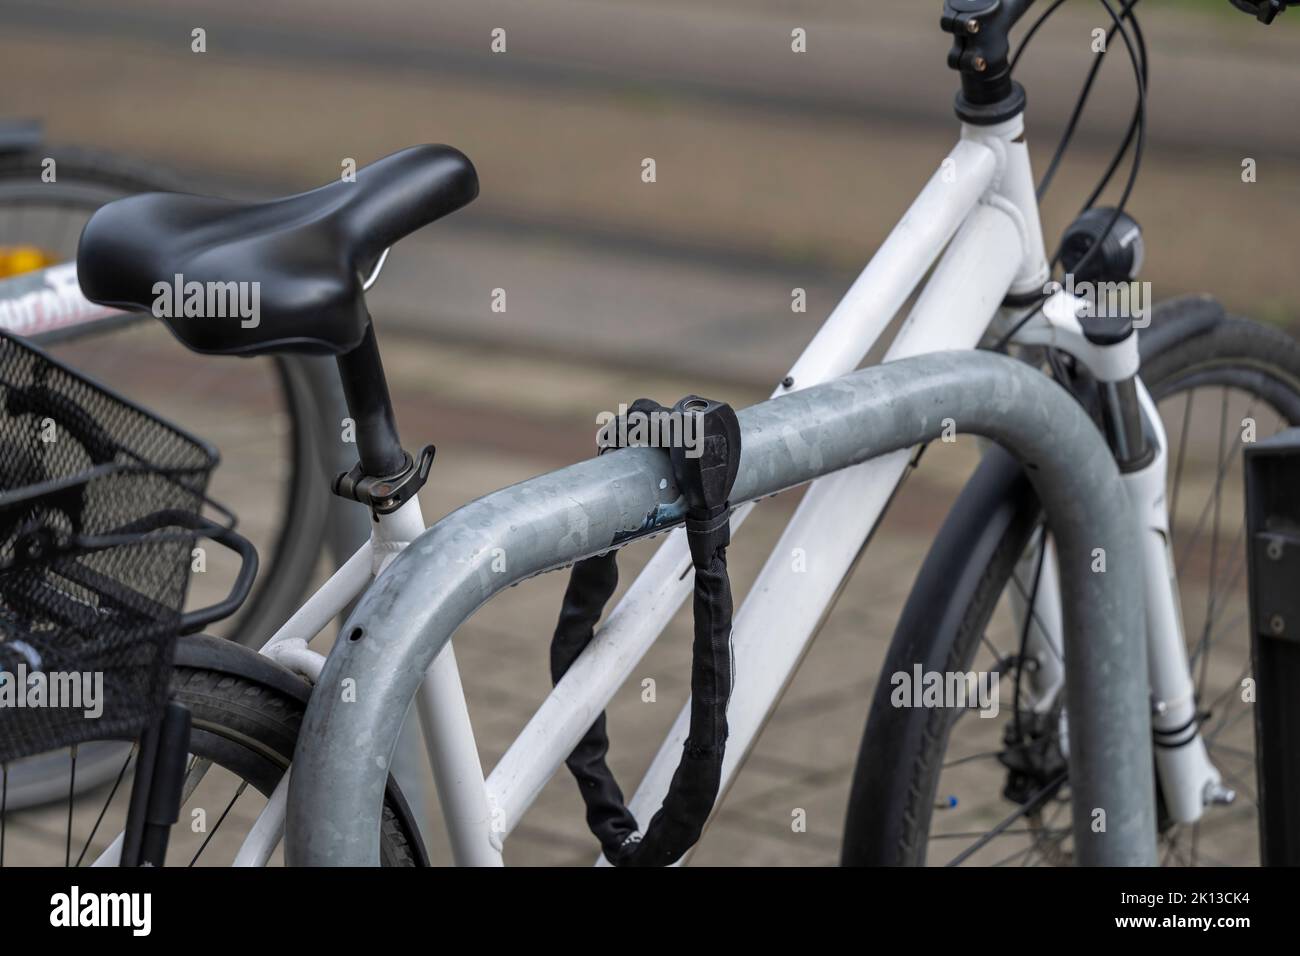 Ein Fahrrad, das mit einem Fahrradschloss gesichert ist Stockfoto